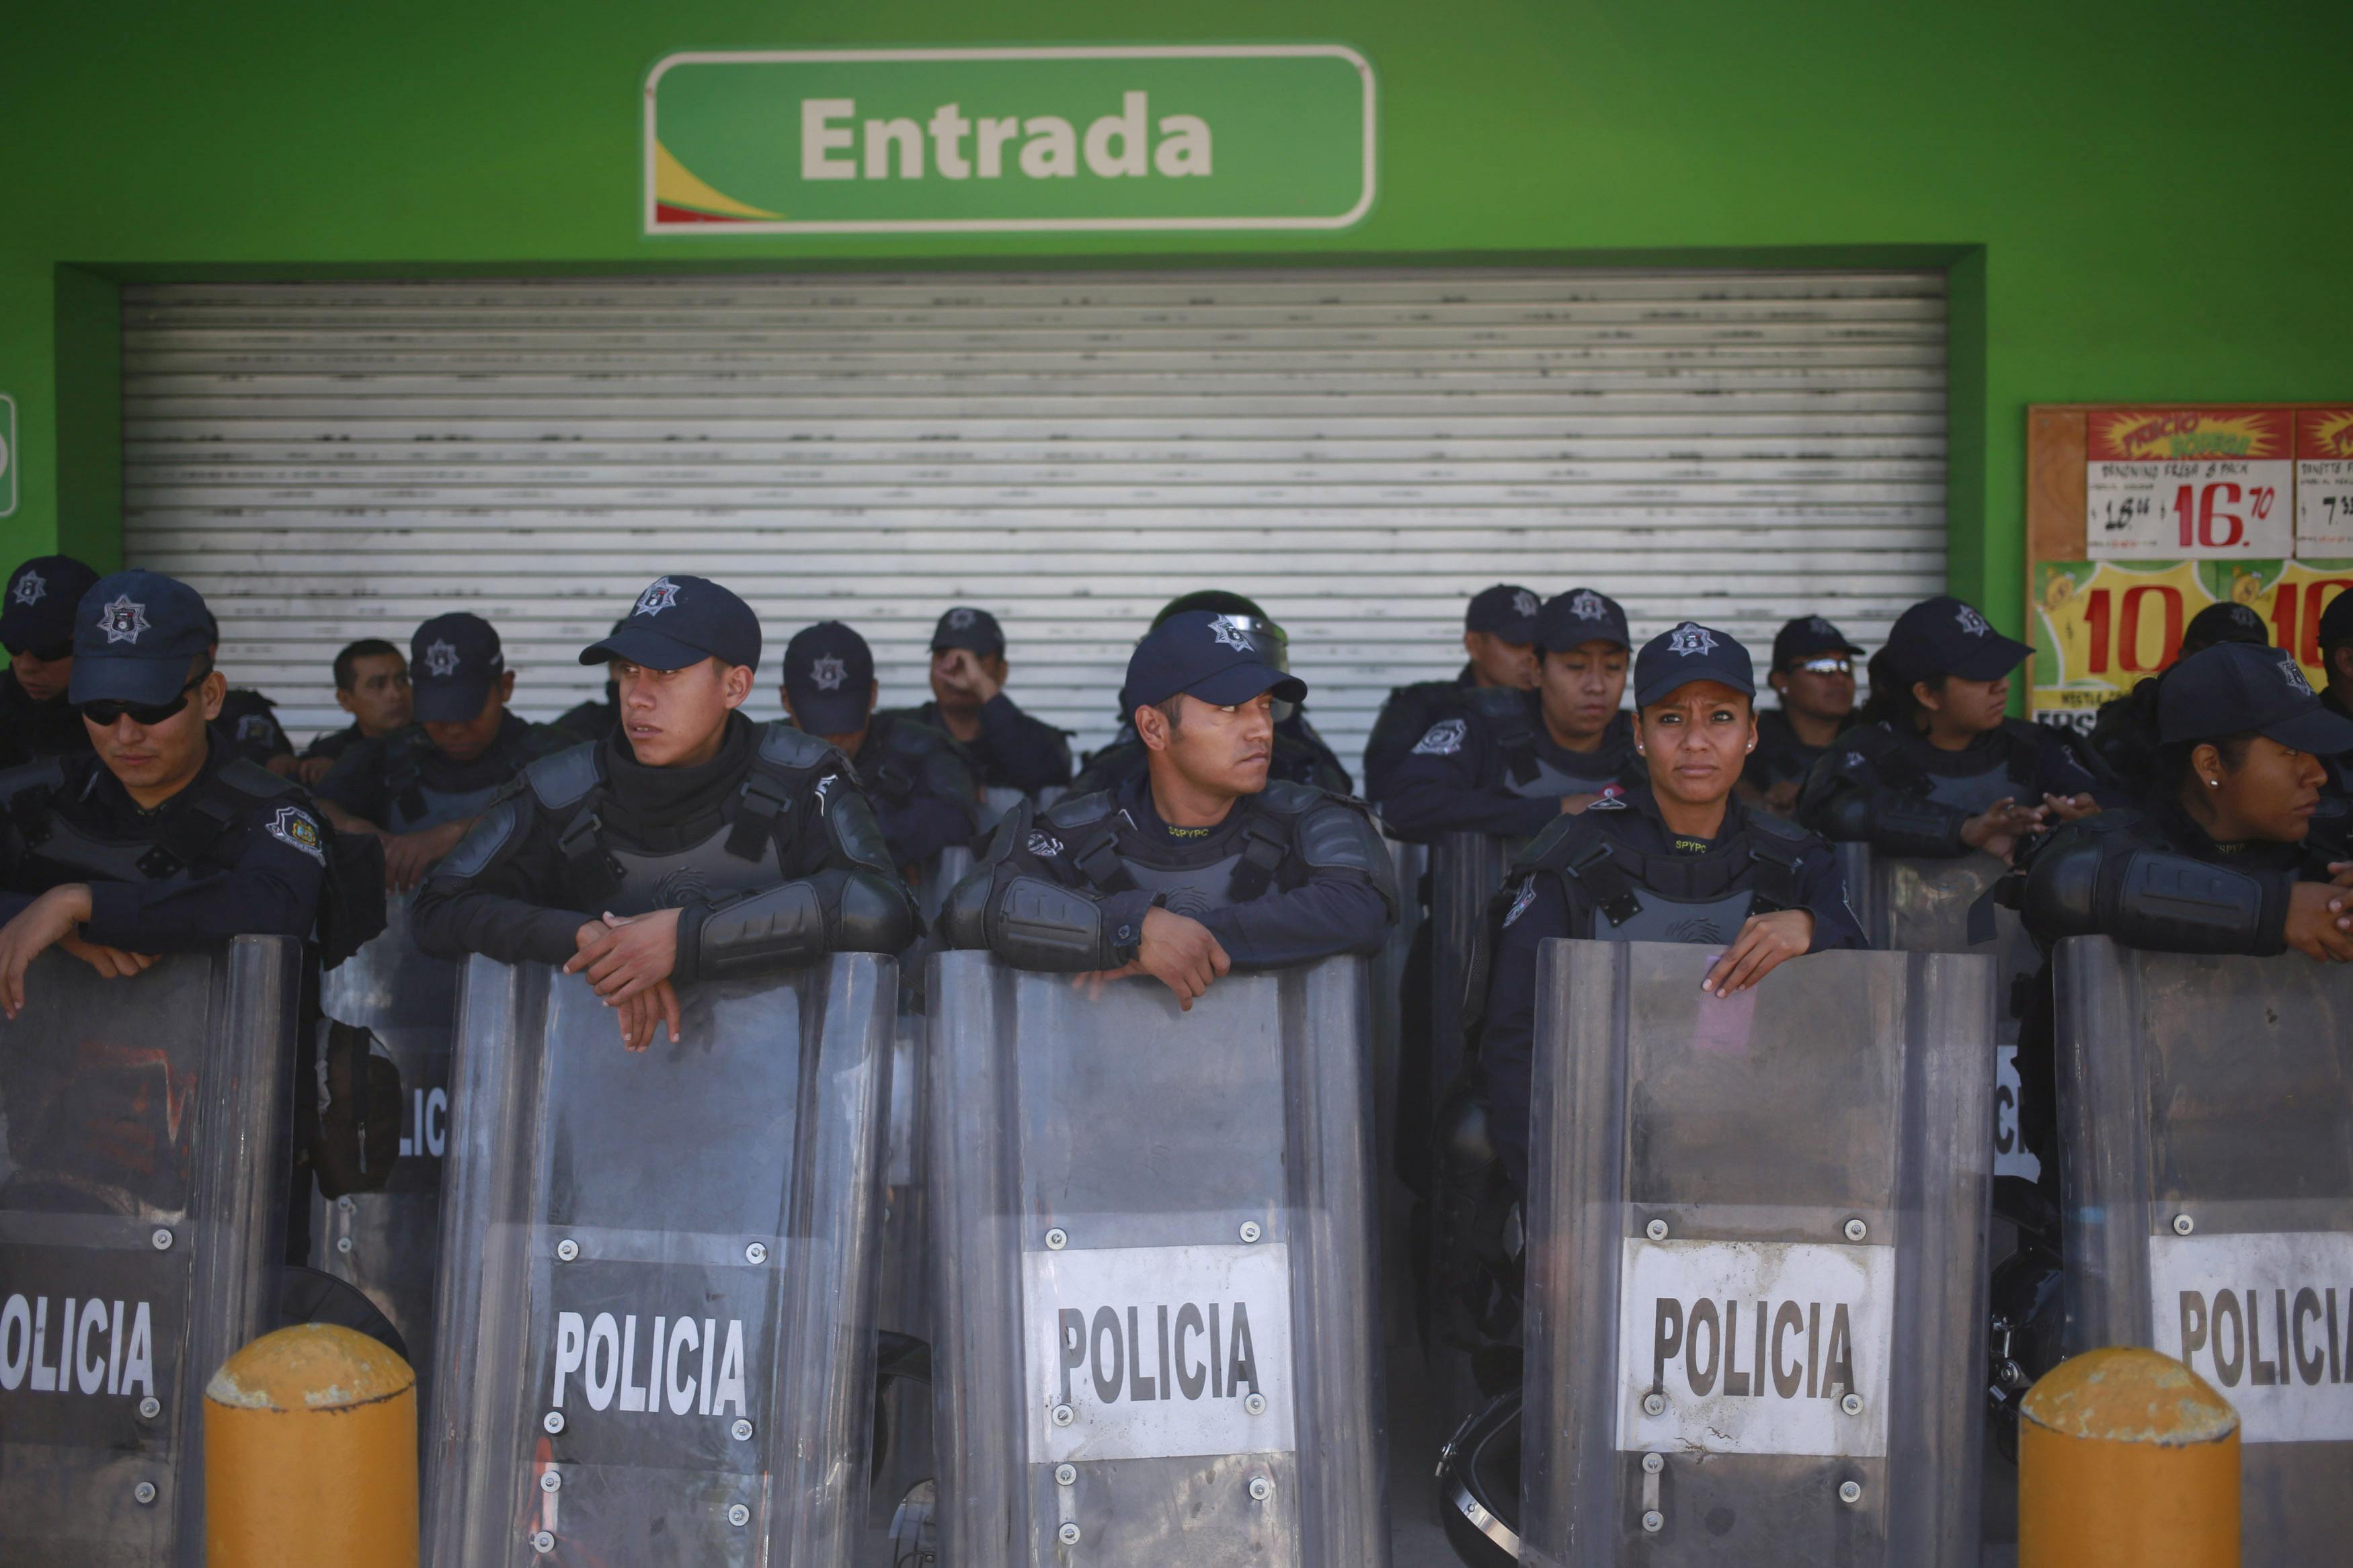 Siguen protestas violentas en México a casi un mes de desaparición de estudiantes